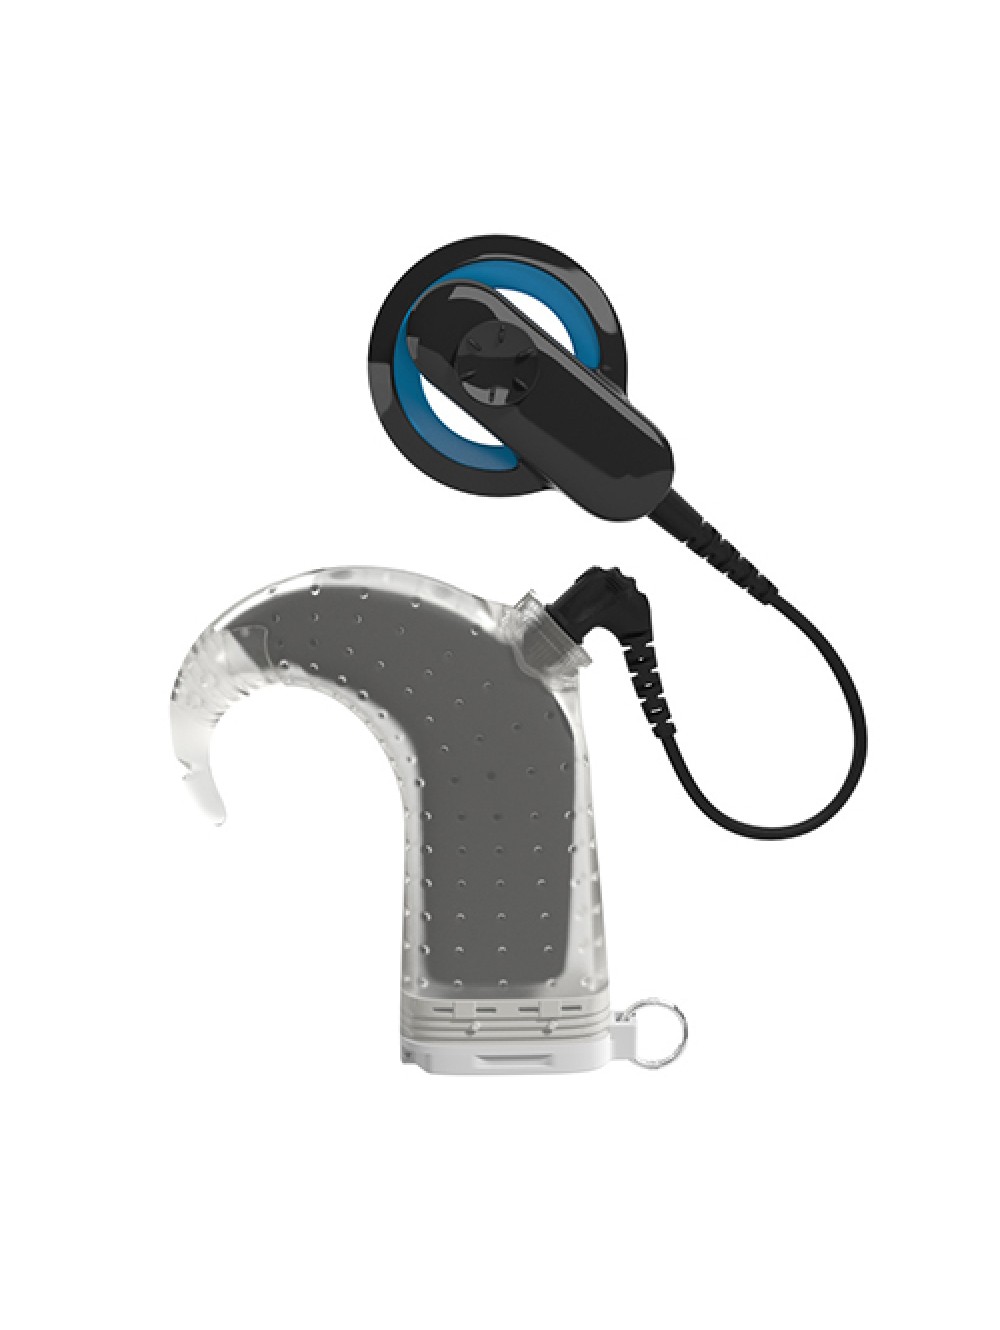 Gentleman ekspedition Oversætte Aqua+ Recipient Kit for N22 - Aqua Accessories - Nucleus 6 - Cochlear